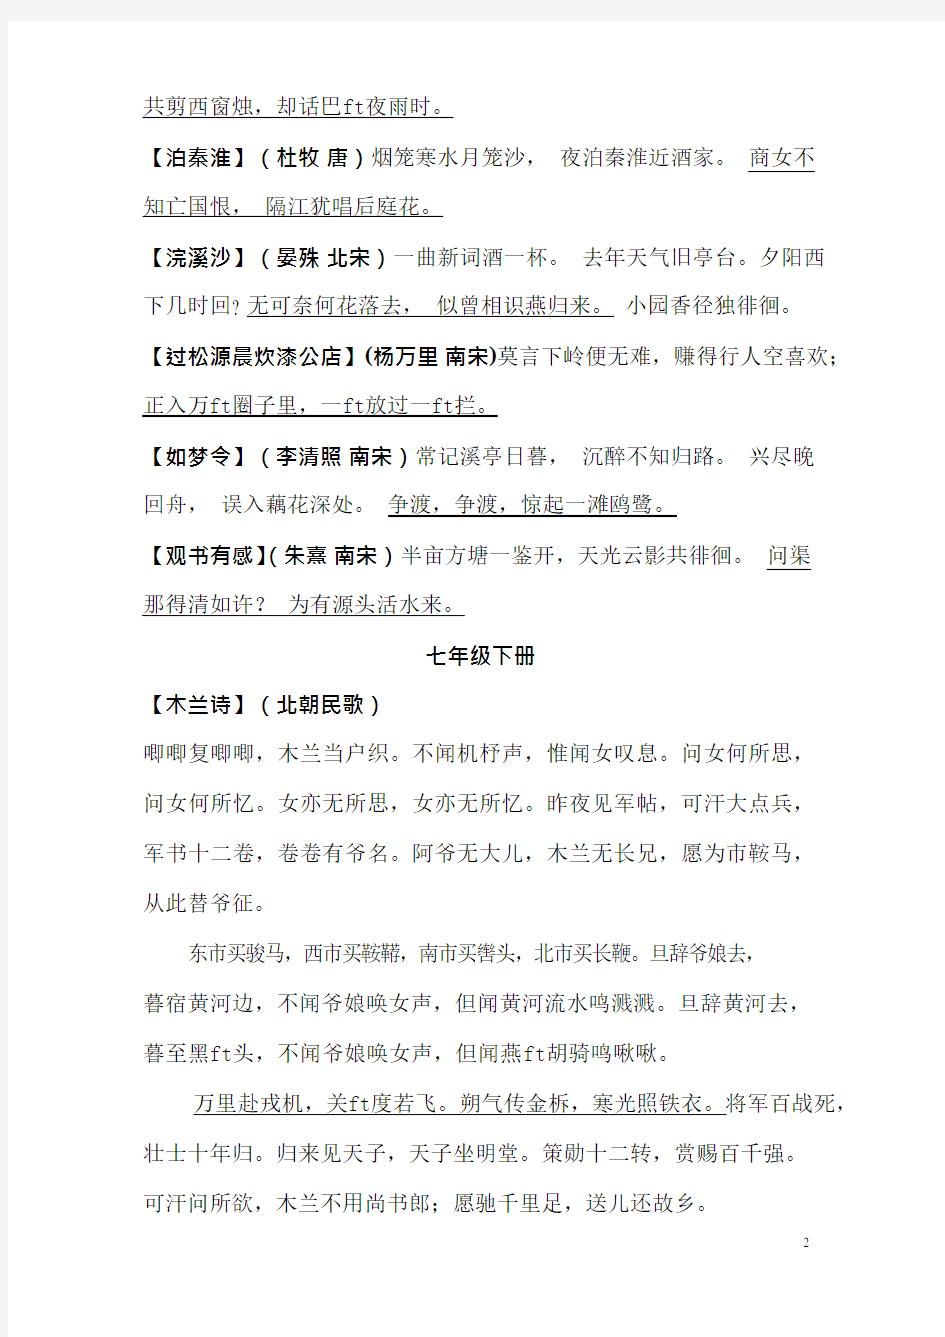 人教版初中语文书上所有古诗全集_分册(最新整理)